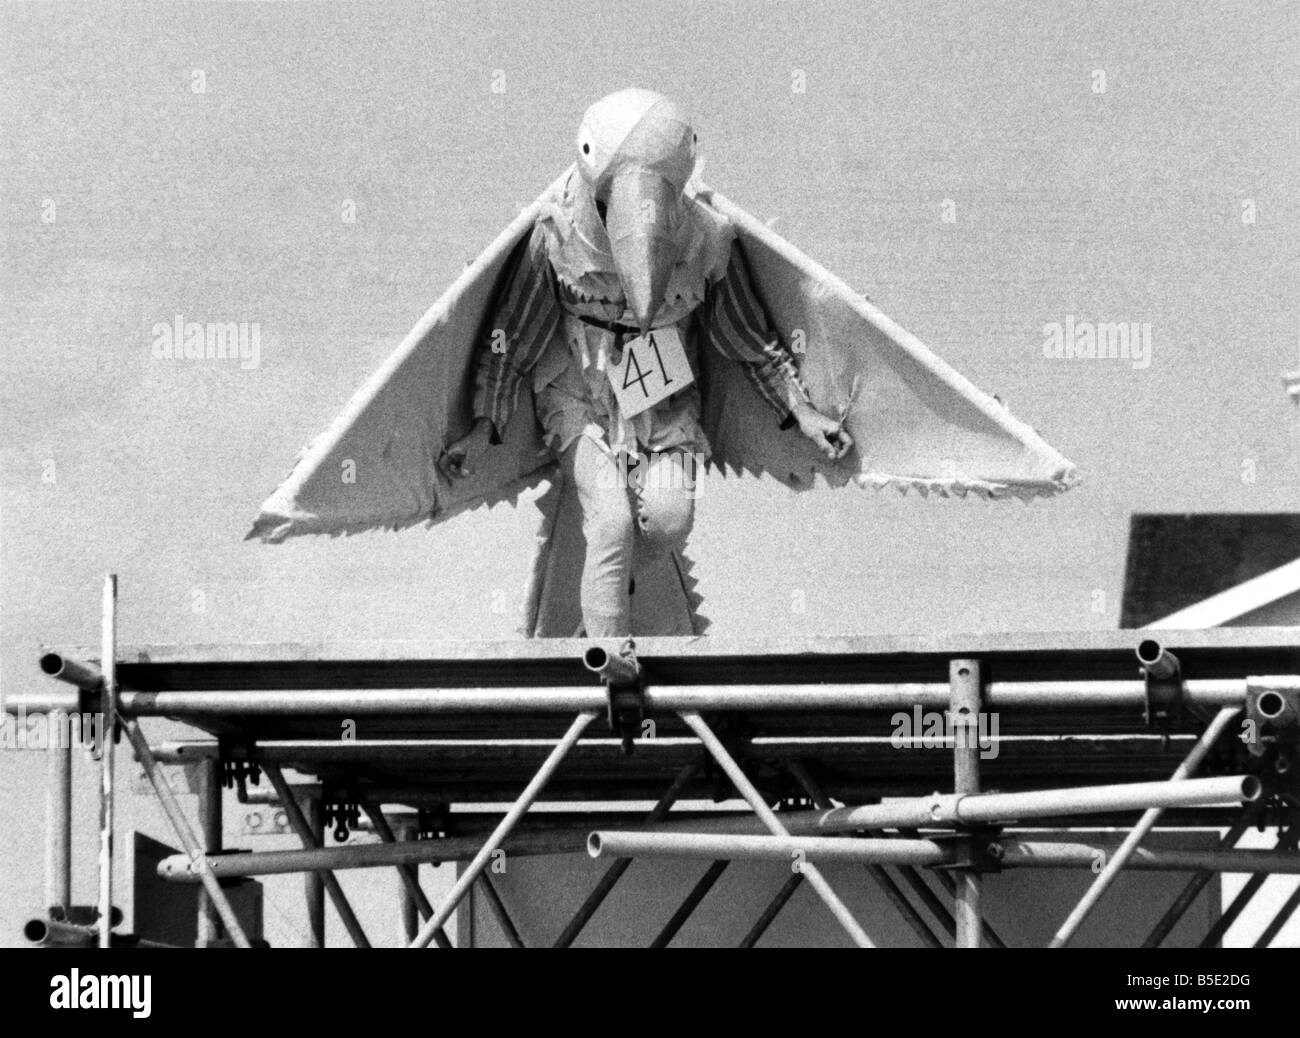 Birdmen Bognor jährte sich zum neunten an diesem bedeutsamen Tag als Bognor Pier zuerst seinen mittlerweile berühmten Birdman Event veranstaltet. Hexen, Nachahmung Flugzeuge, hängen Glidermen, Narren und Flüge in Kostüm vorgeführt vor Urlaubern in West Sussex-Bericht vor dem Sprung ausgeschaltet und der Mole. Die Idee um so weit wie möglich und erste Preis von £250 an Mike Collia, 51 ging, 22 Meter auf seinem Hängegleiter flog fliegen. August 1980 P000984 Stockfoto